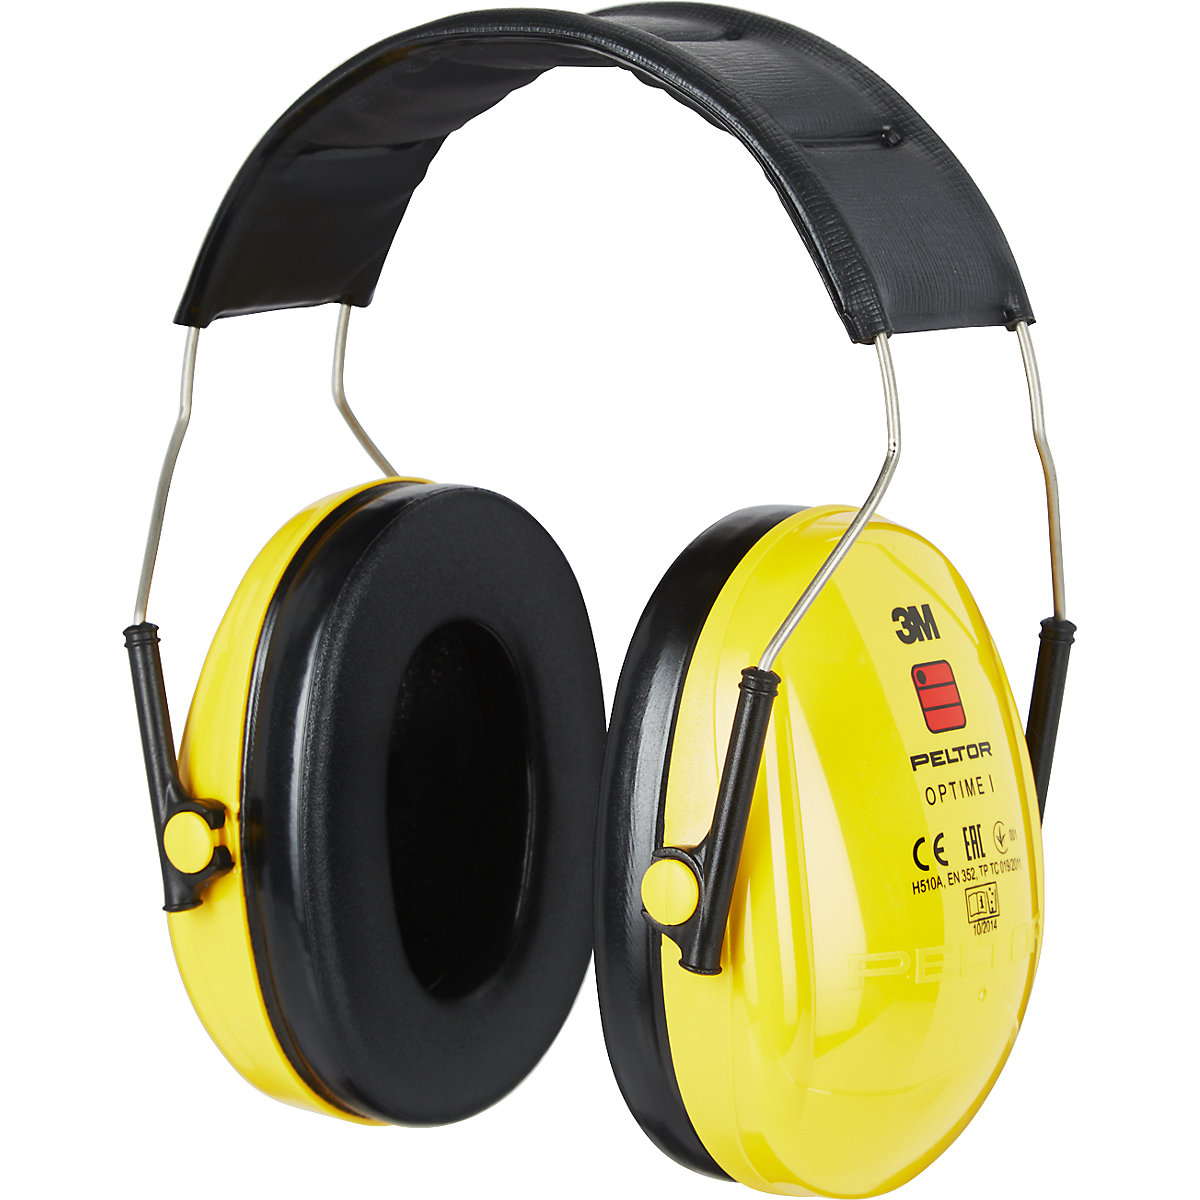 PELTOR™ OPTIME™ I H510A ear muffs – 3M: SNR 27 dB kaiserkraft